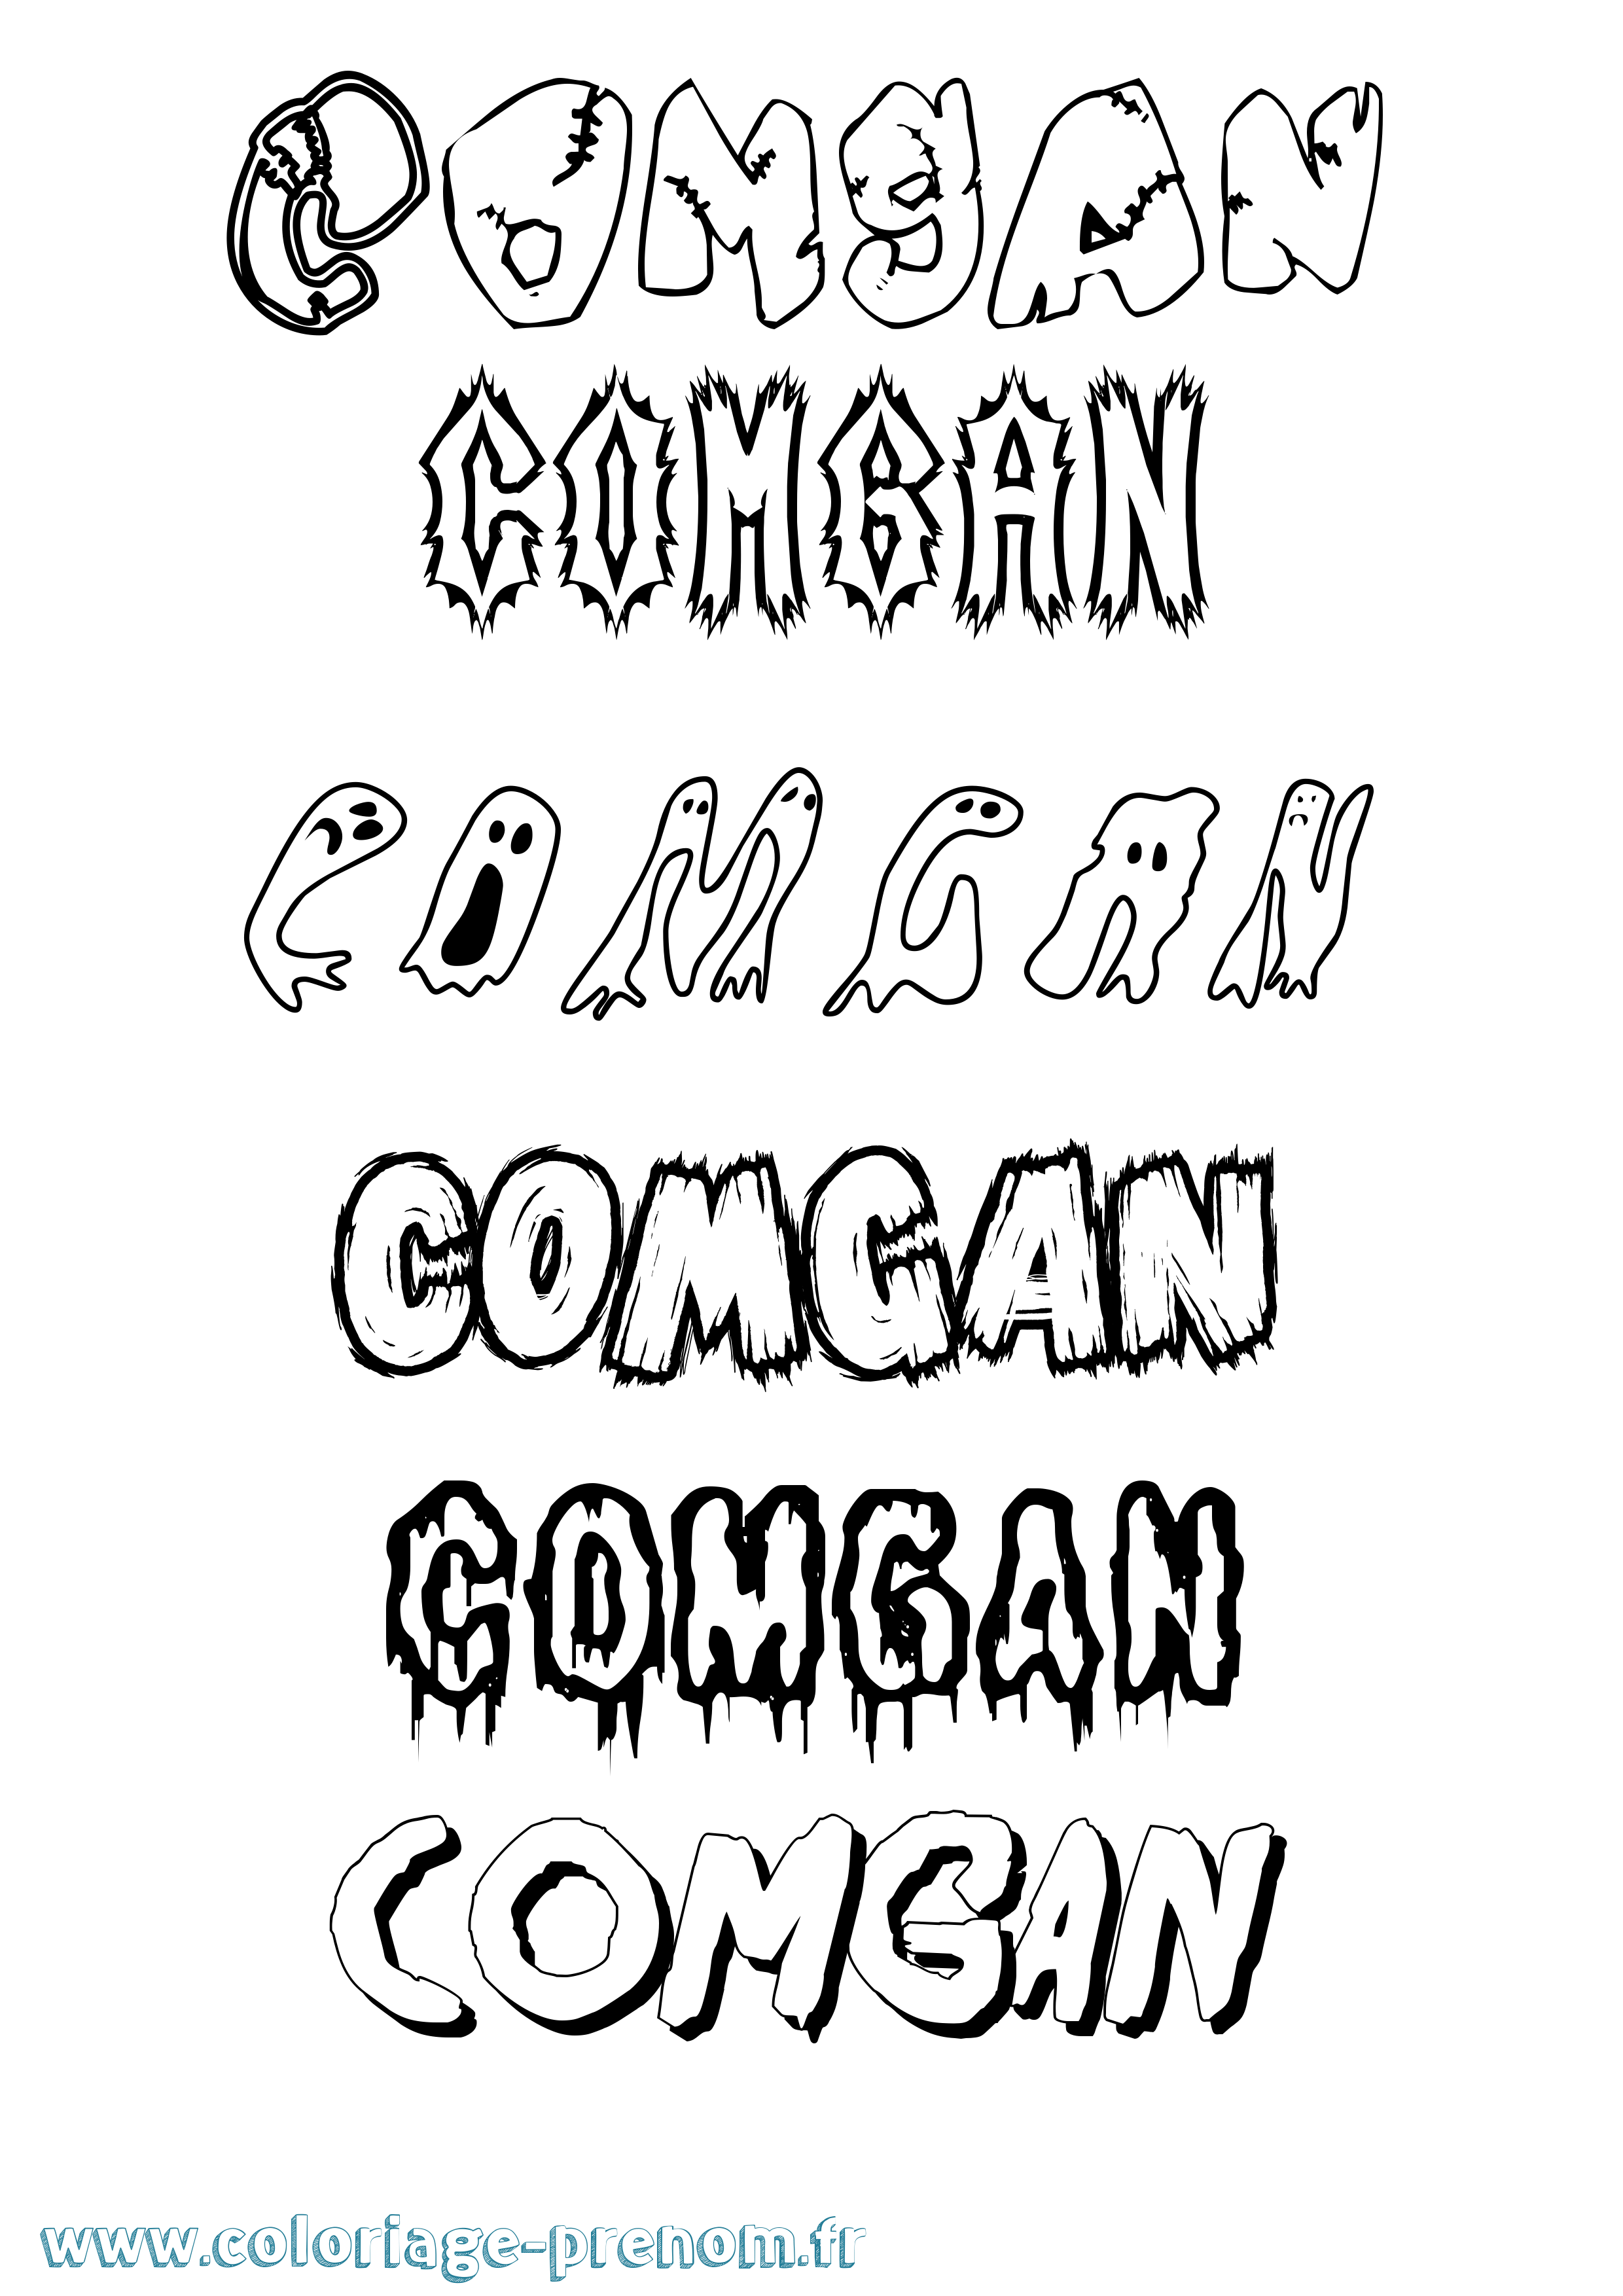 Coloriage prénom Comgan Frisson